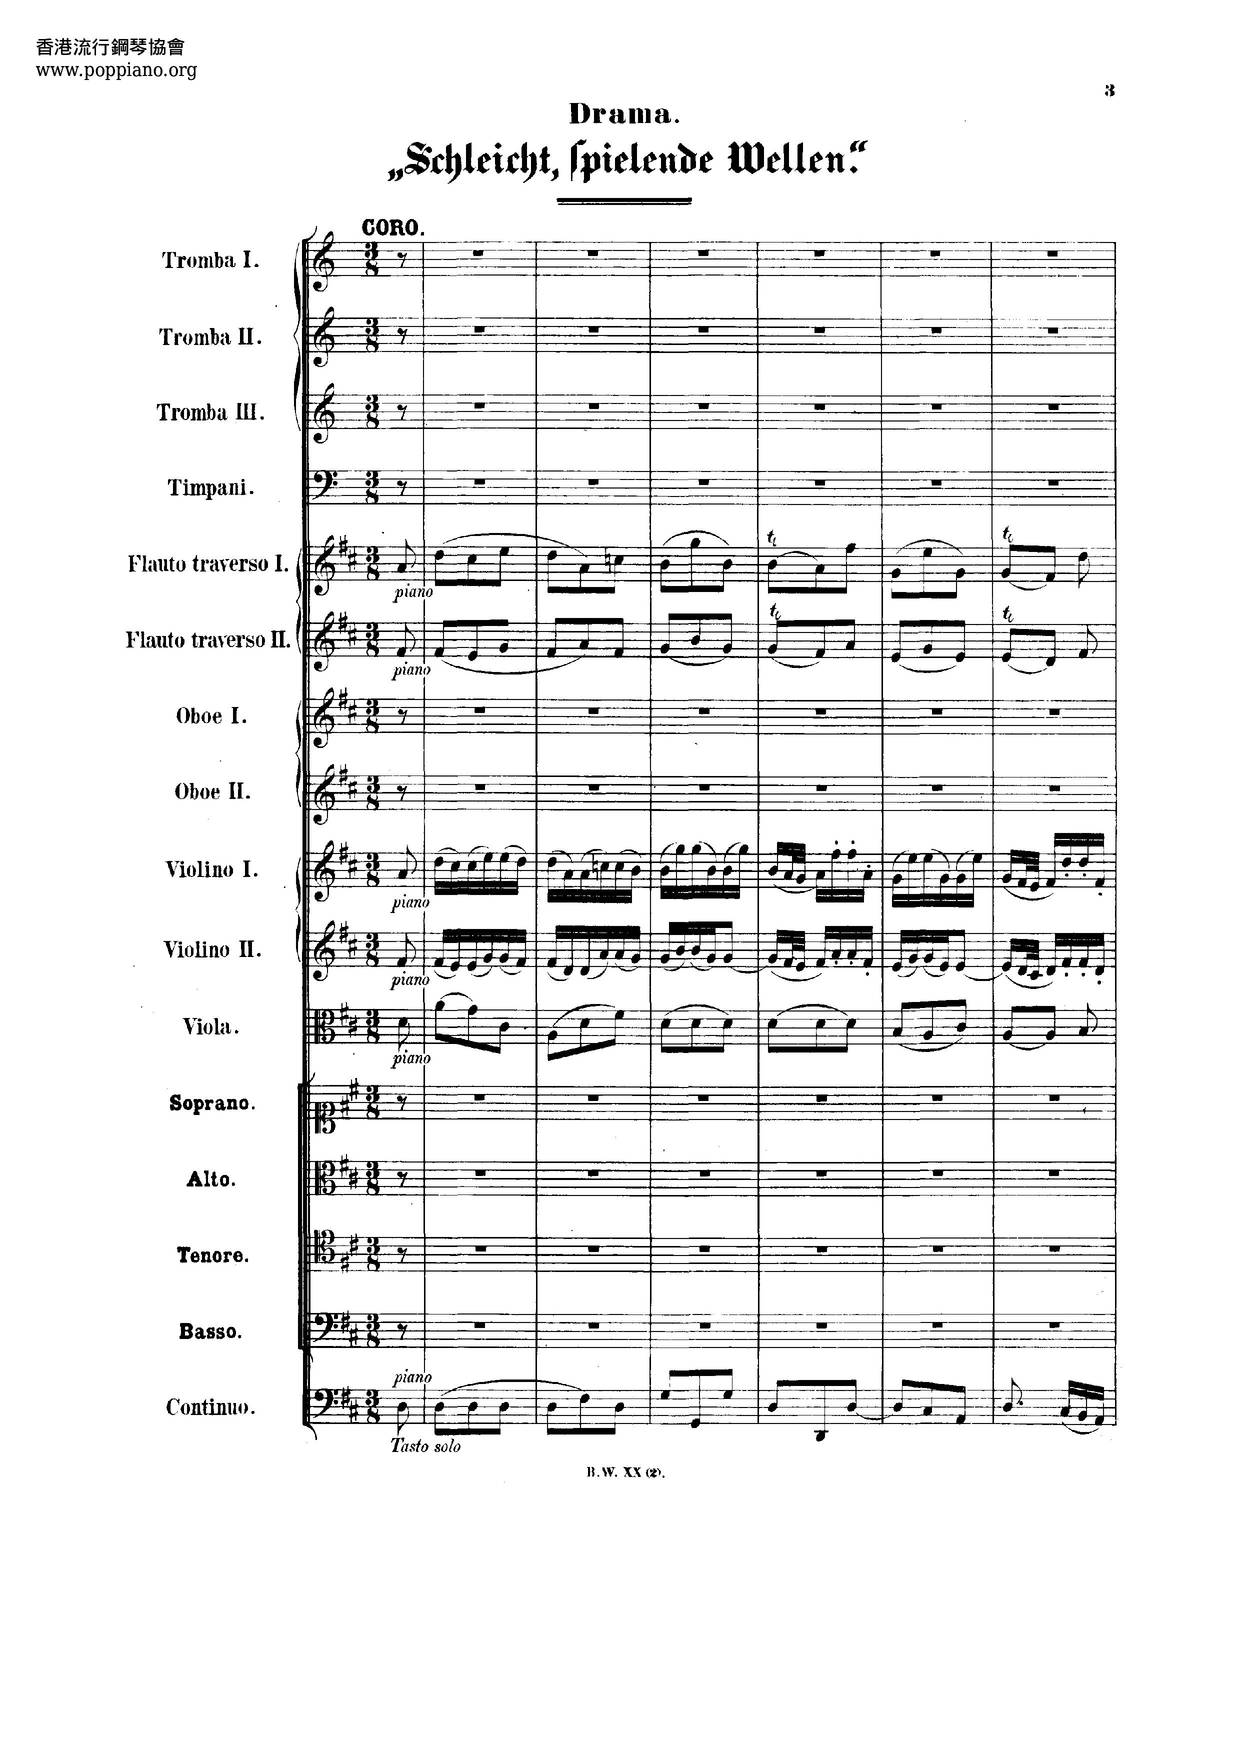 Schleicht, Spielende Wellen, BWV 206 Score